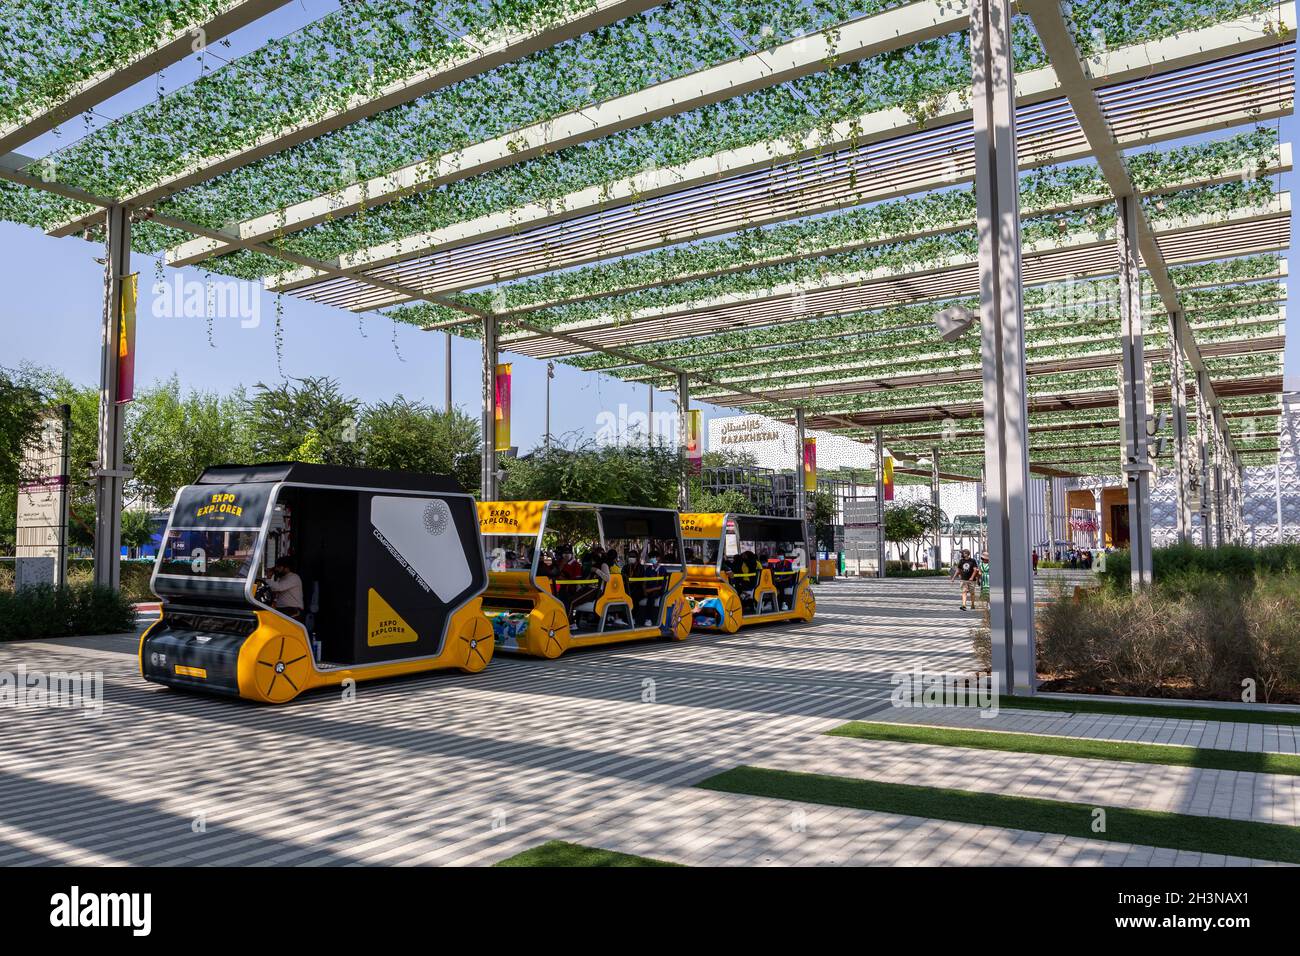 Dubaï, Émirats arabes Unis, 27.10.2021.Expo 2020 Dubai - train à air comprimé jaune d'Expo Explorer transportant des touristes à travers le site de l'Expo. Banque D'Images